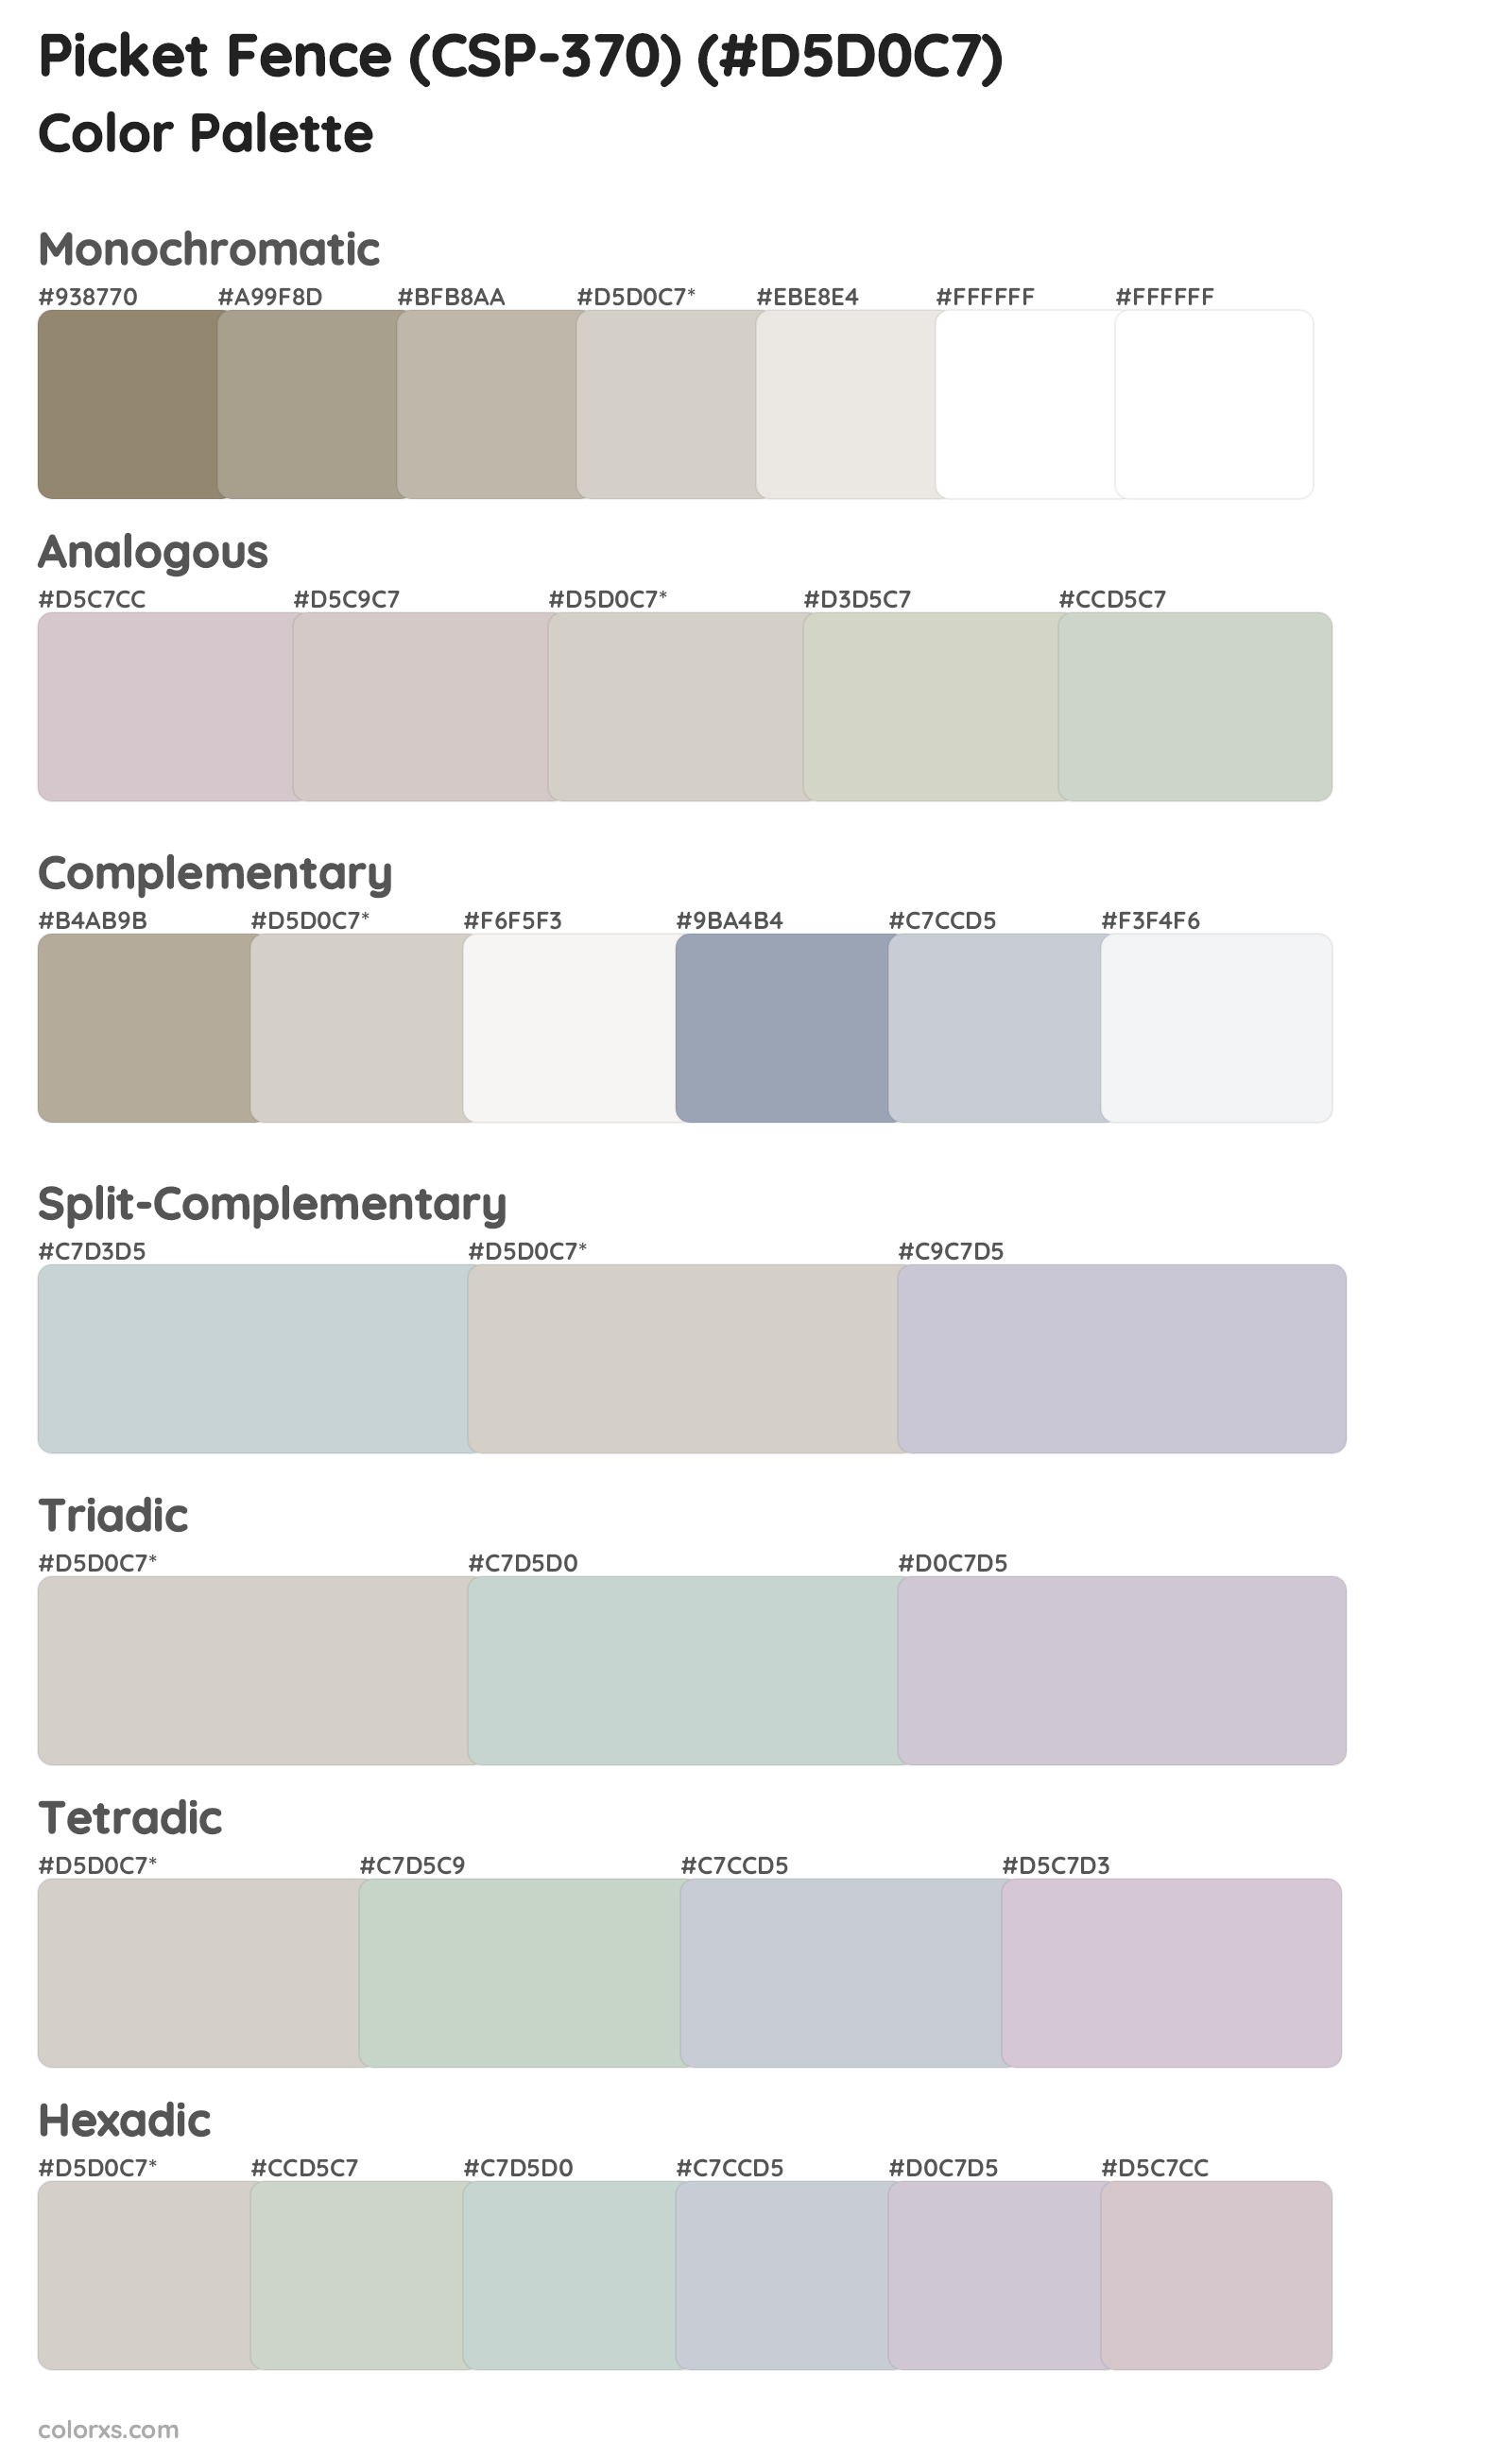 Picket Fence (CSP-370) Color Scheme Palettes